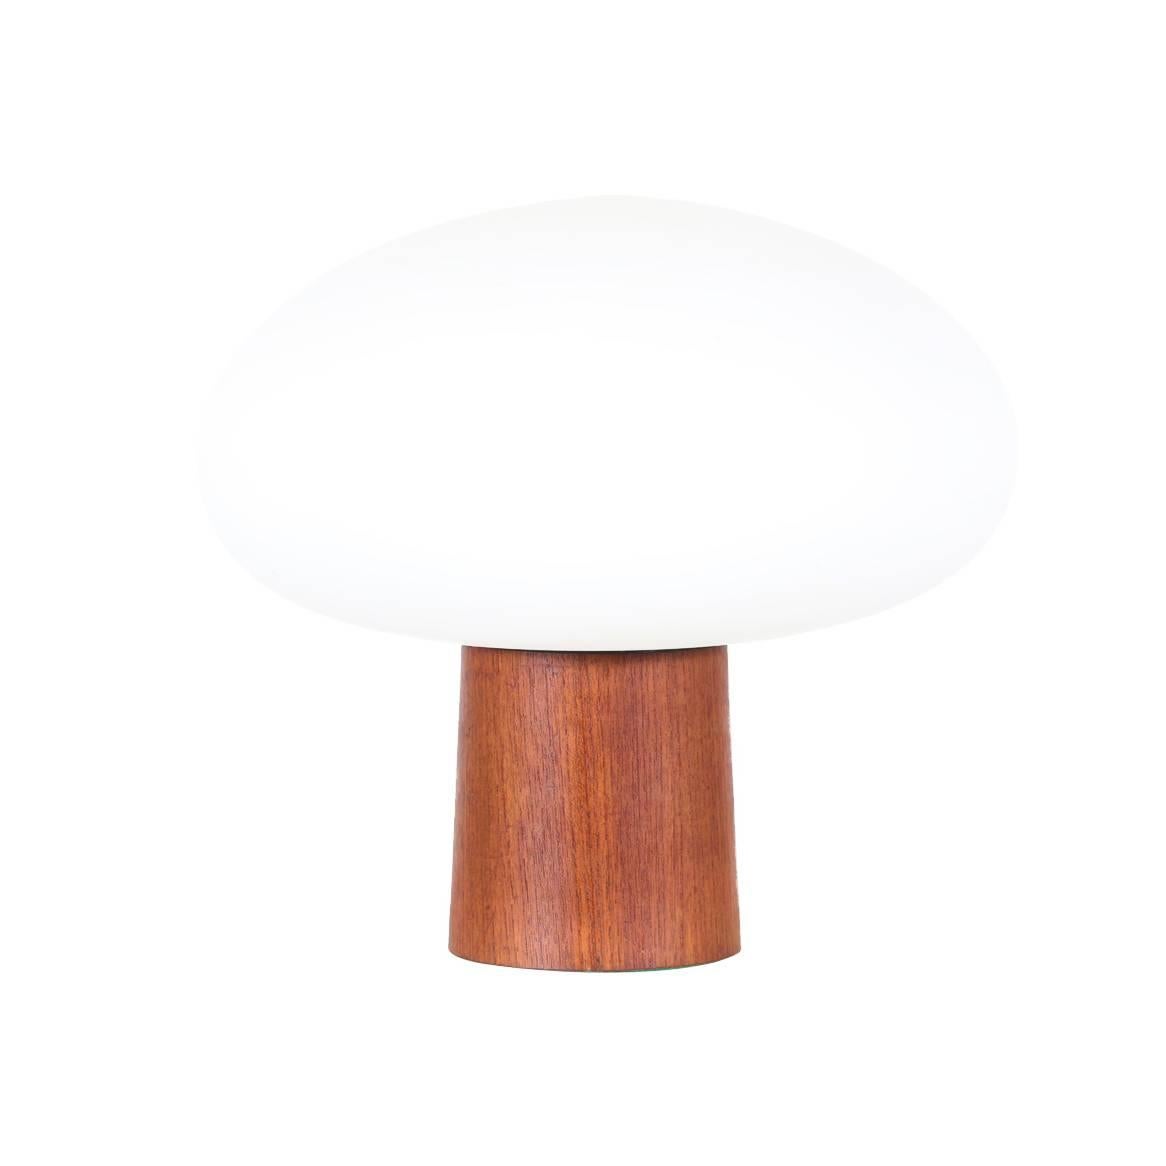 Midcentury Mushroom Table Lamp by Laurel